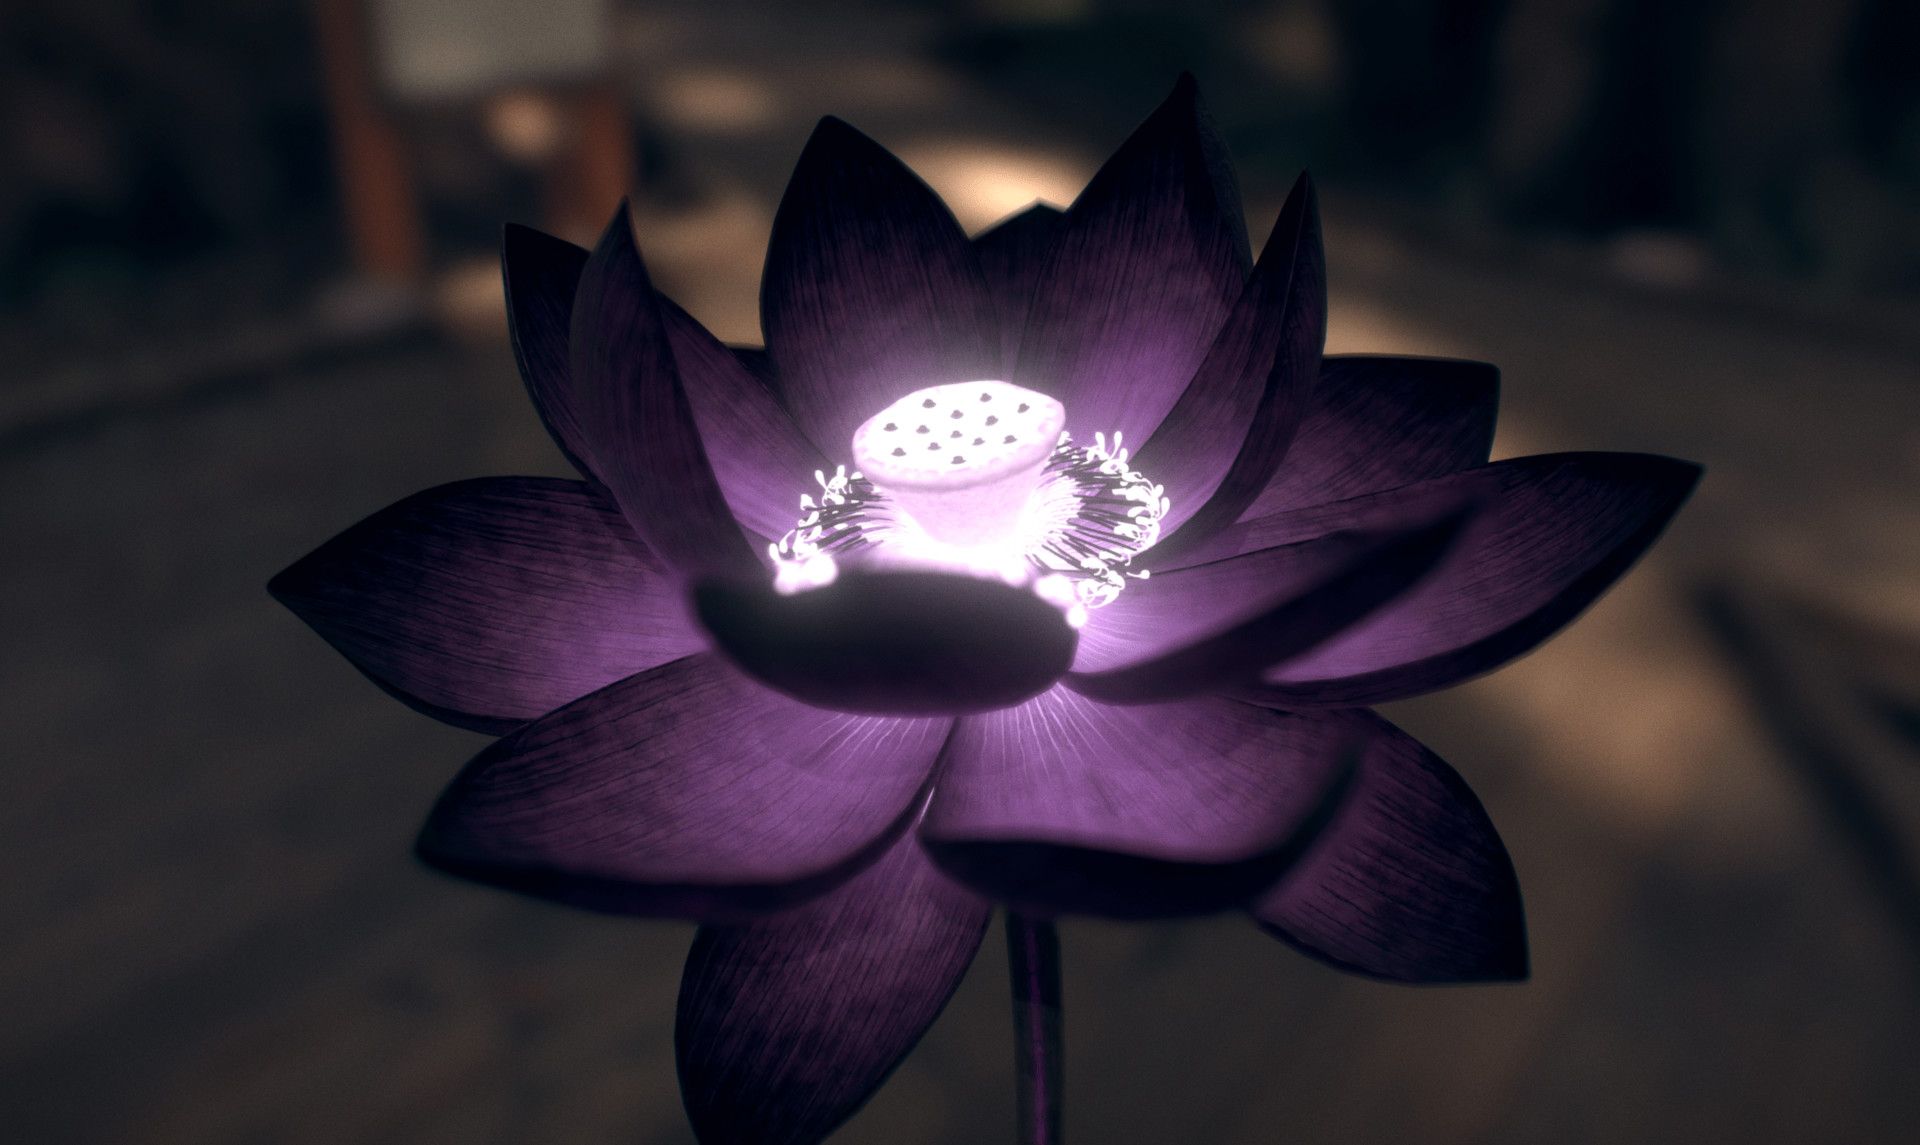 black lotus flower. Flowers, Lotus flower, R wallpaper